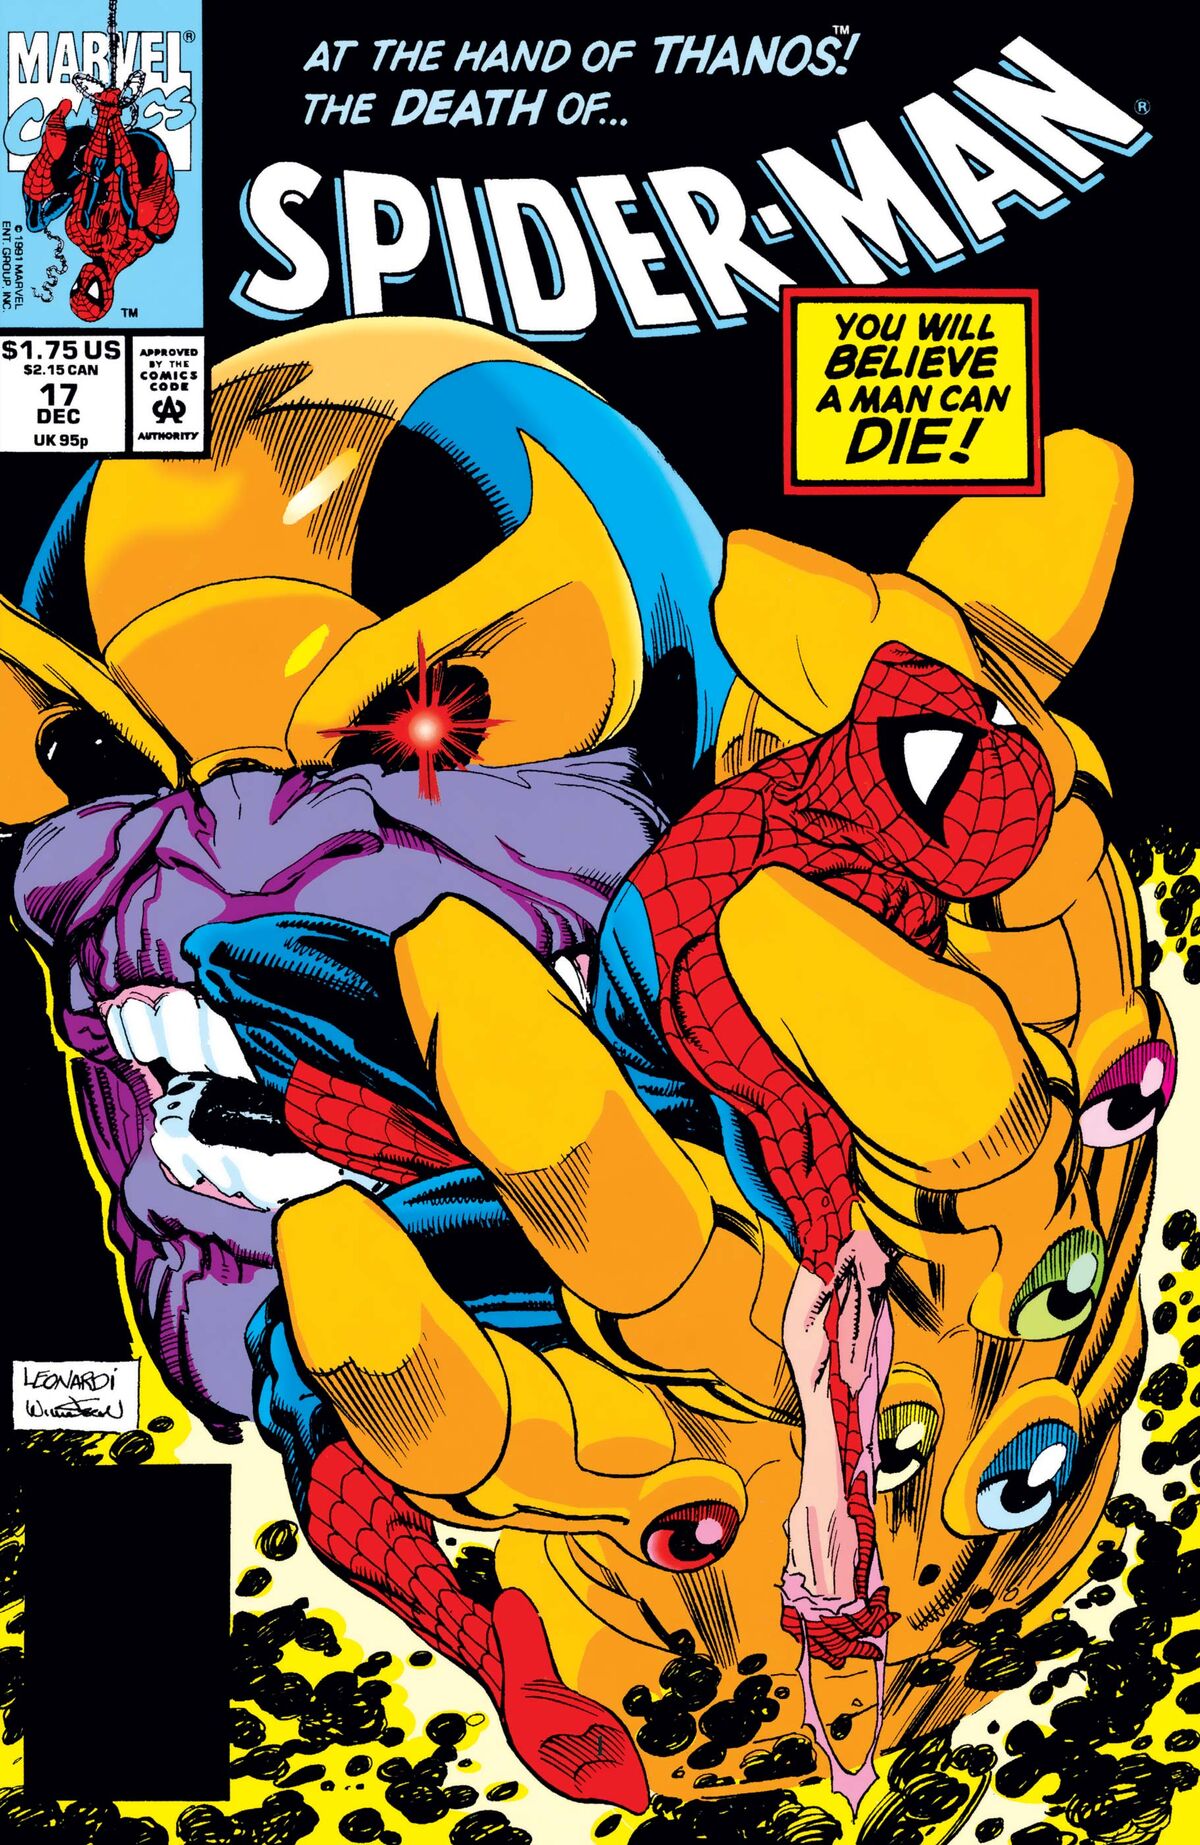 Spider-Man Vol 1 17 | Marvel Database | Fandom